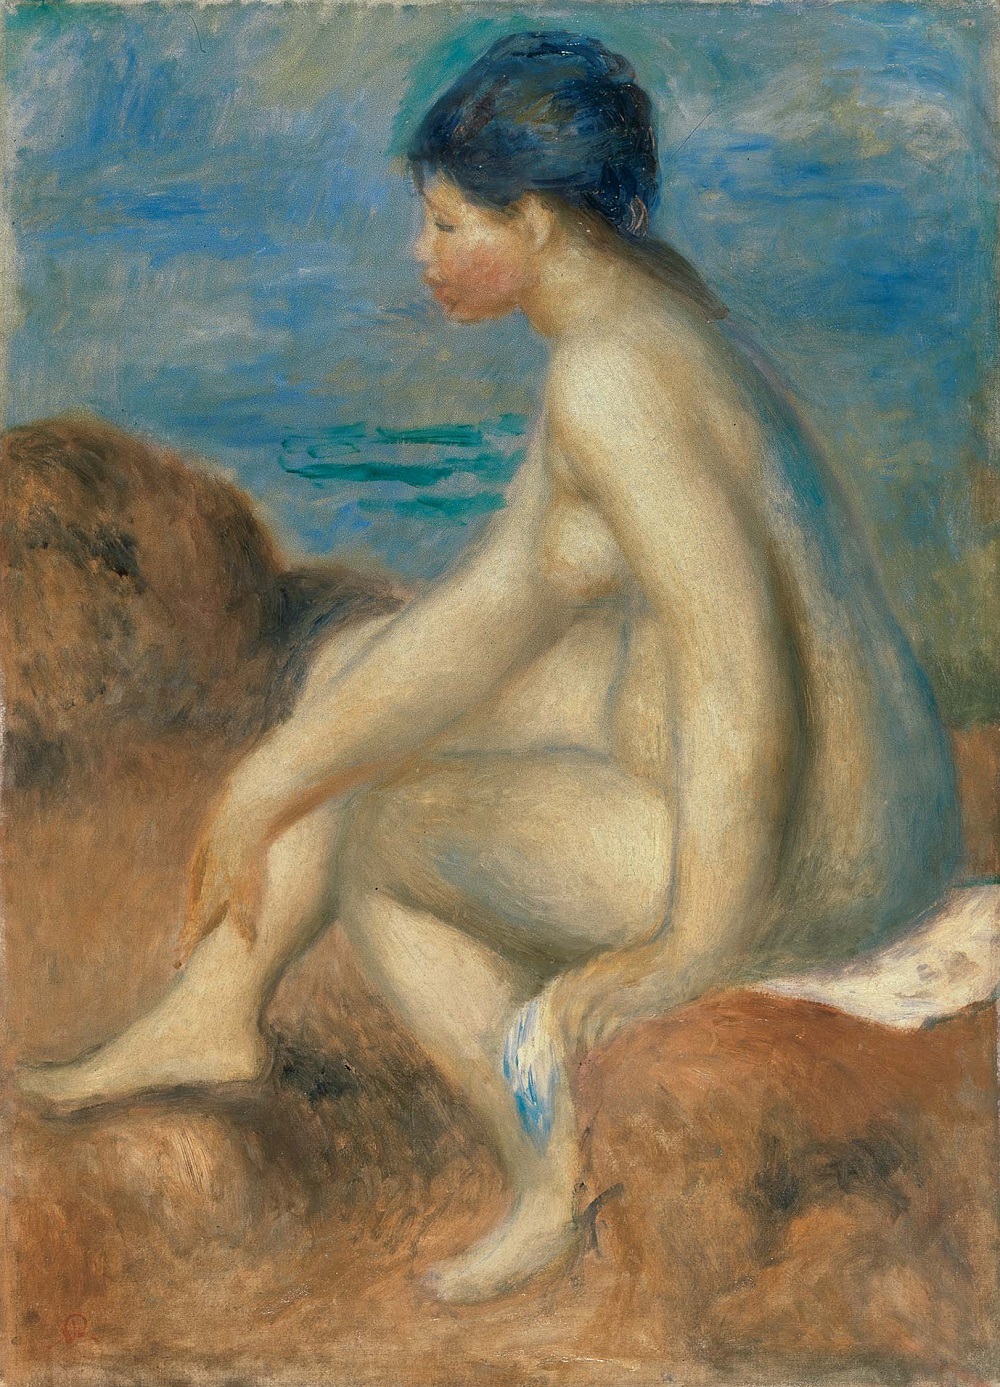 ピエール＝オーギュスト・ルノワール《浴女》1892-93年頃、油彩・キャンヴァス、53.5×38.0㎝